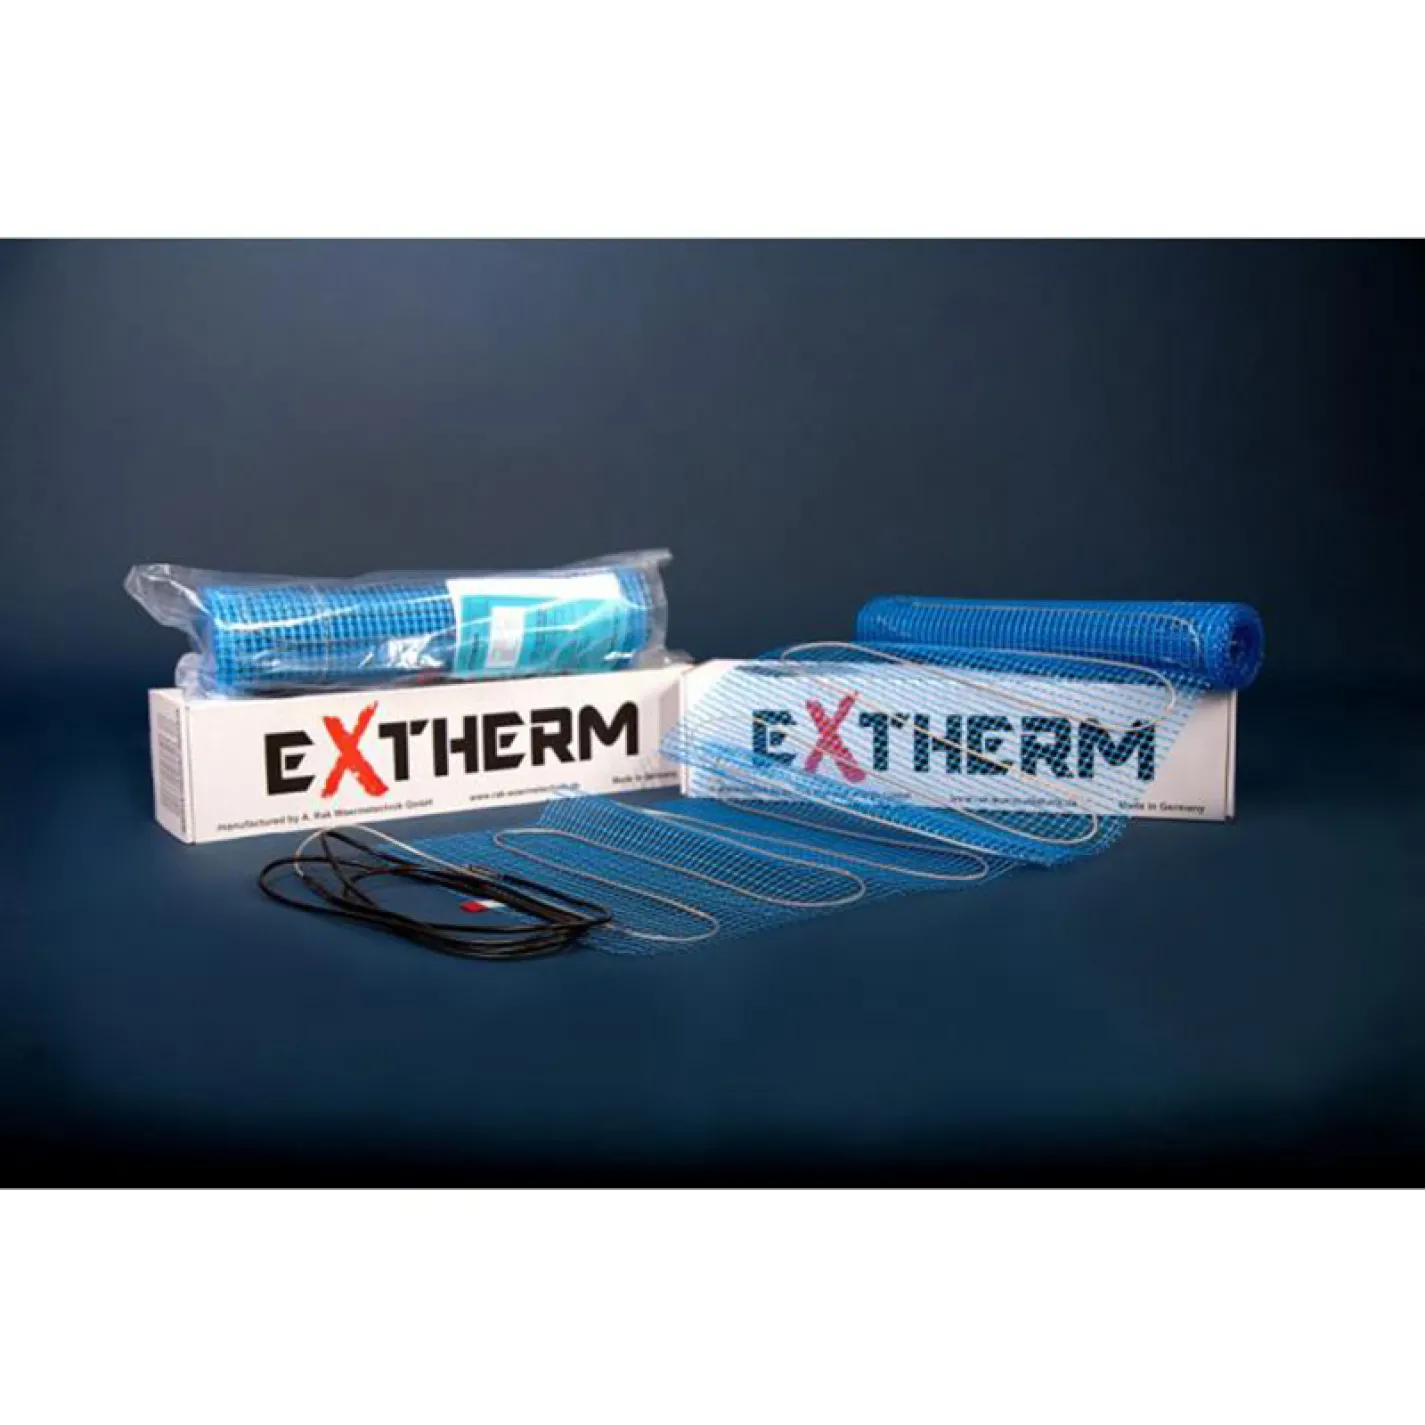 Одножильный нагревательный мат Extherm ETL 600-200 1200 Вт 6 м2 - Фото 1